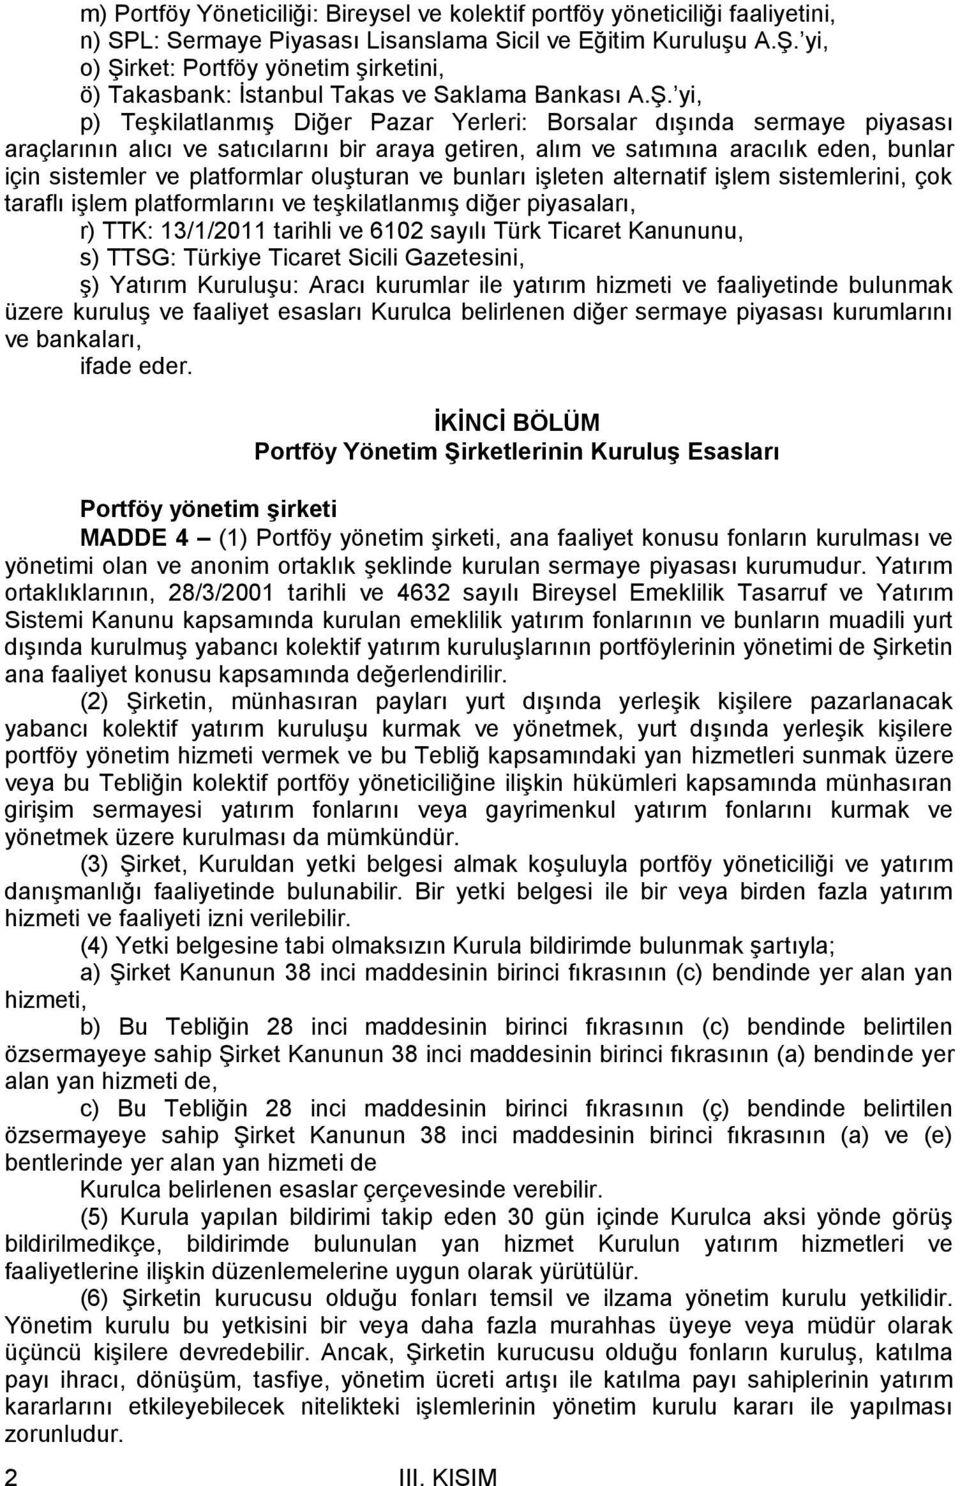 rket: Portföy yönetim şirketini, ö) Takasbank: İstanbul Takas ve Saklama Bankası A.Ş.